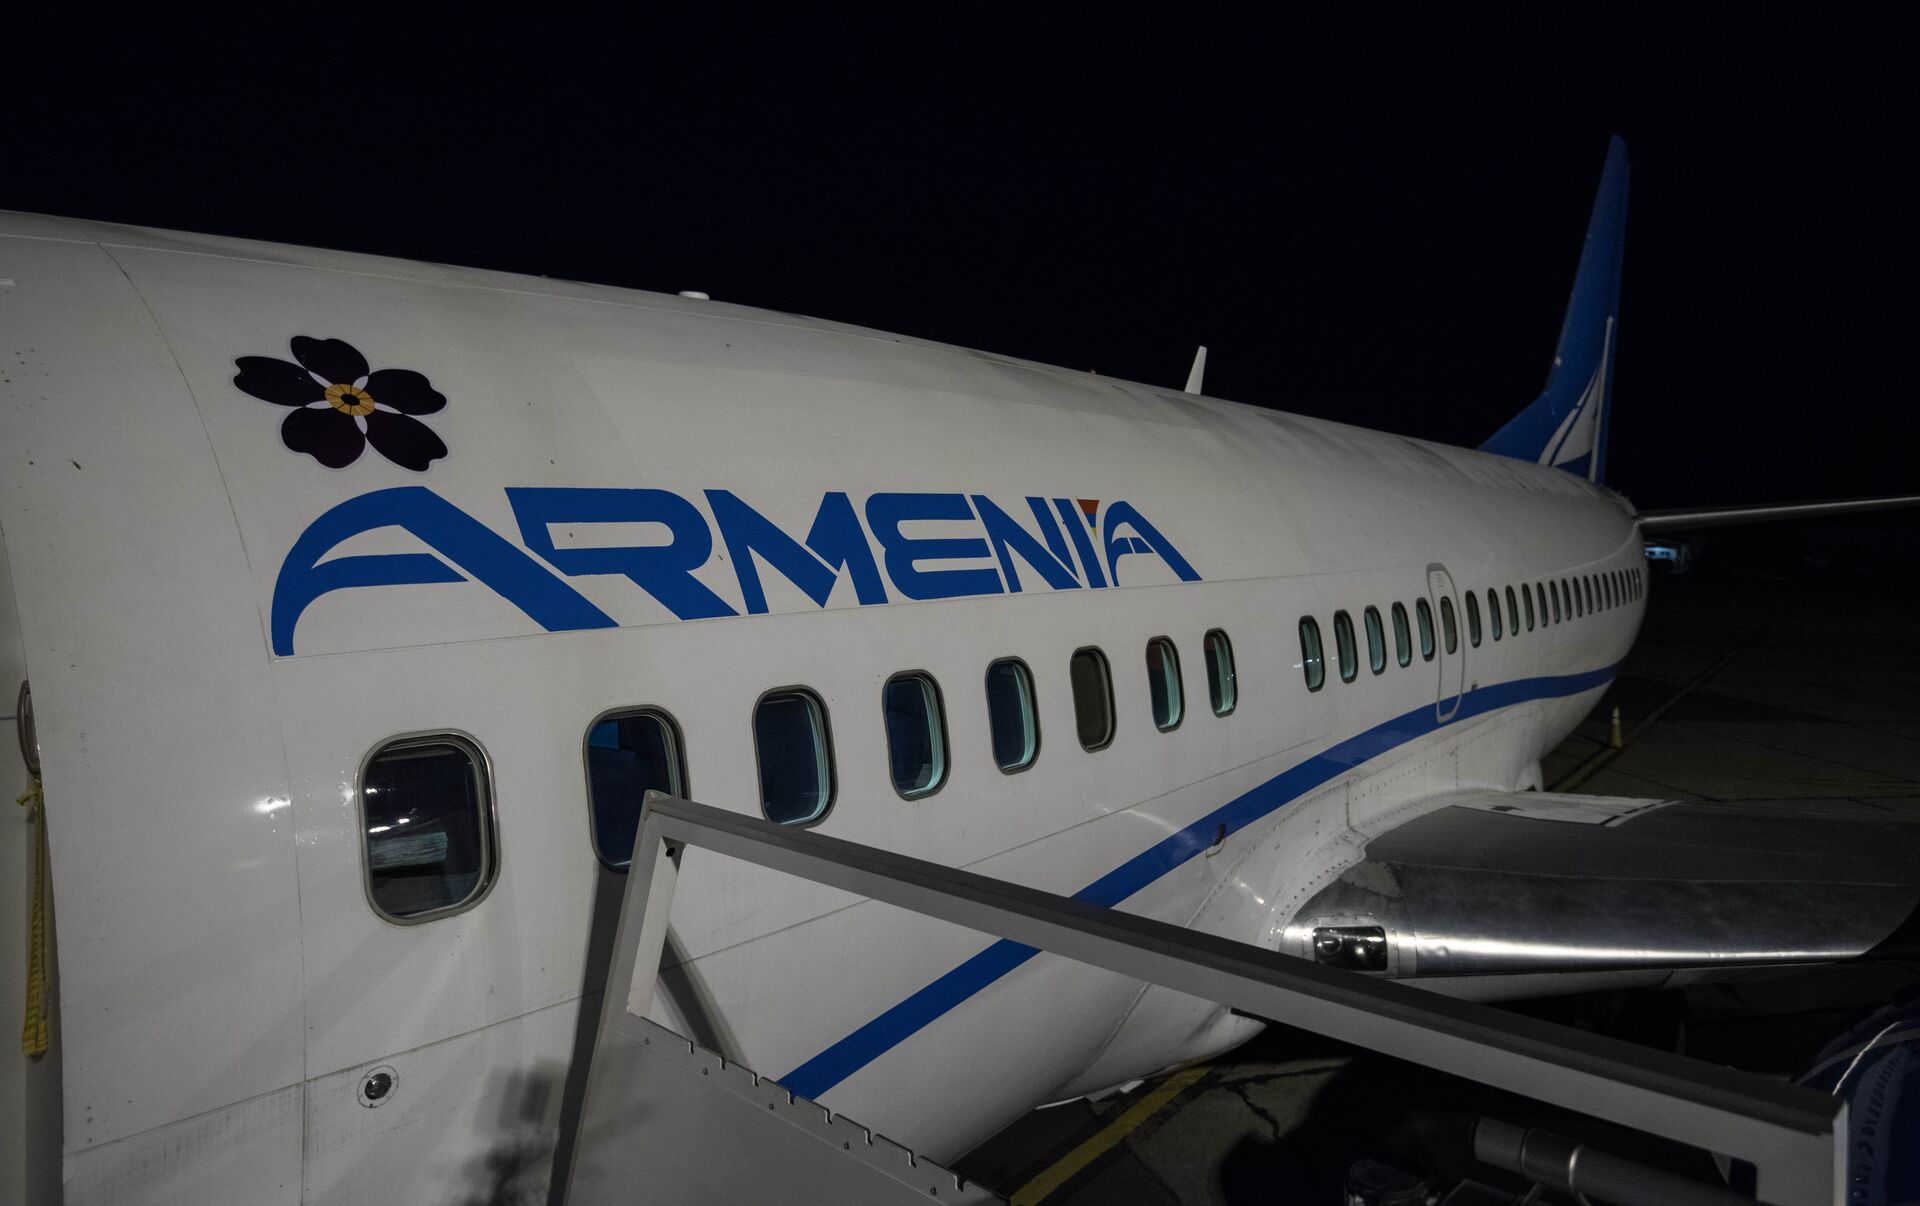 самолет в армению